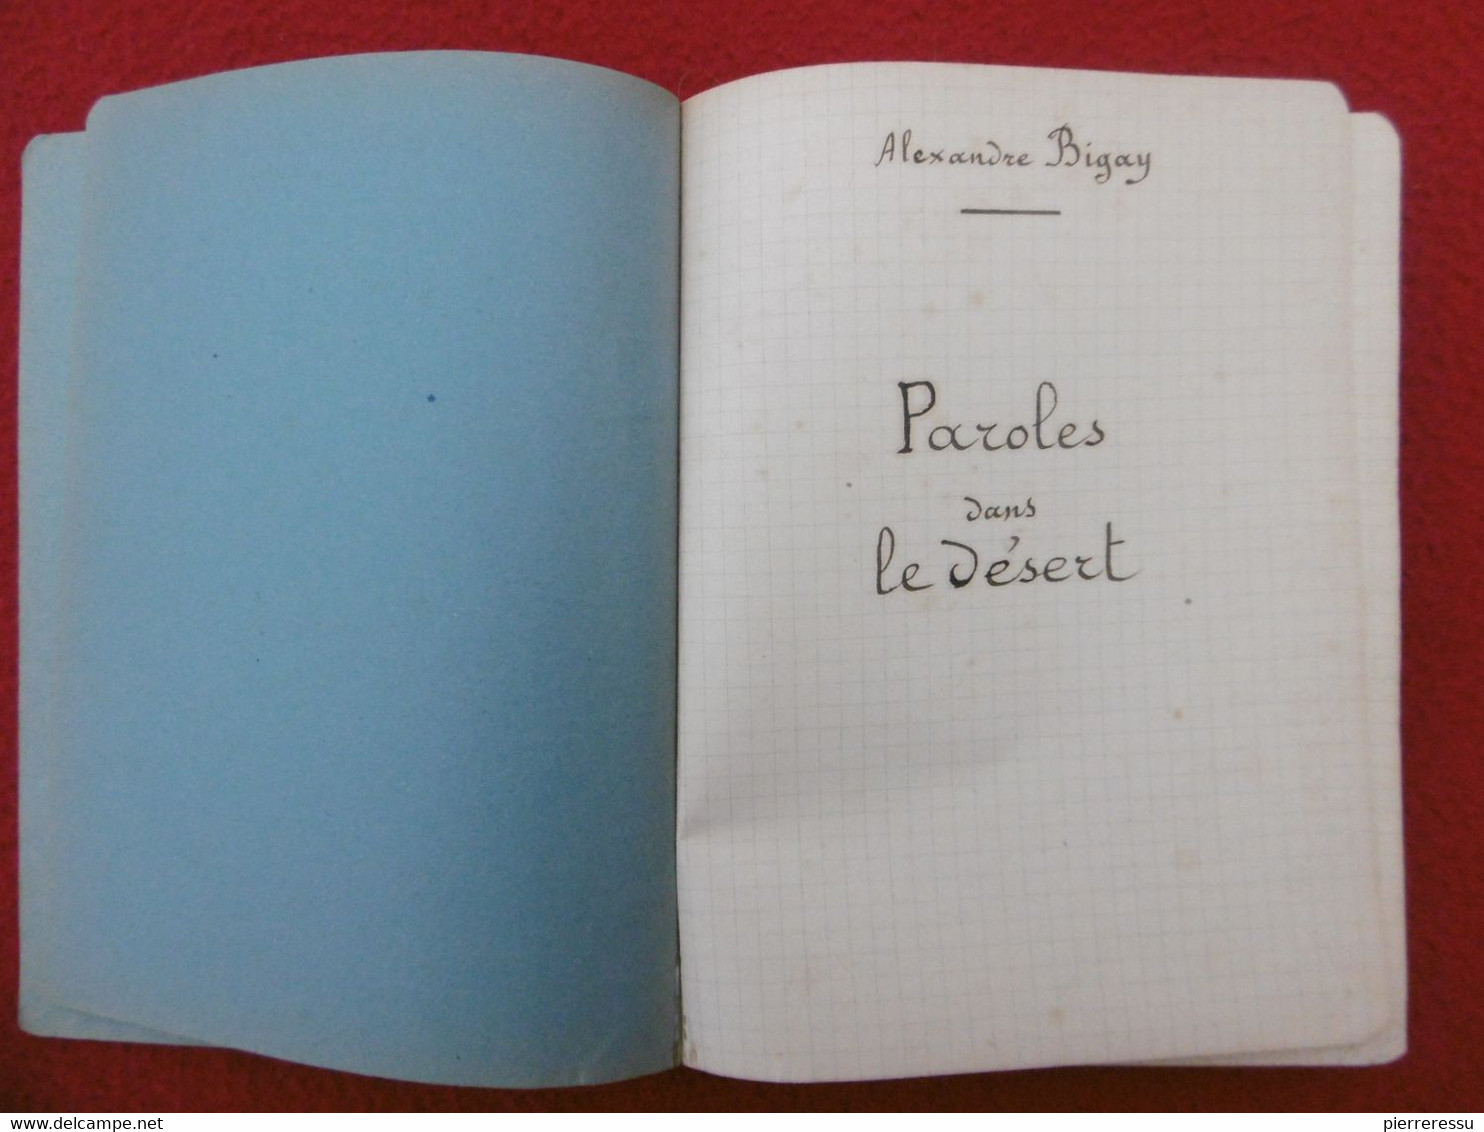 THIERS ALEXANDRE BIGAY MANUSCRIT PAROLES DANS LE DESERT - Manuscripts